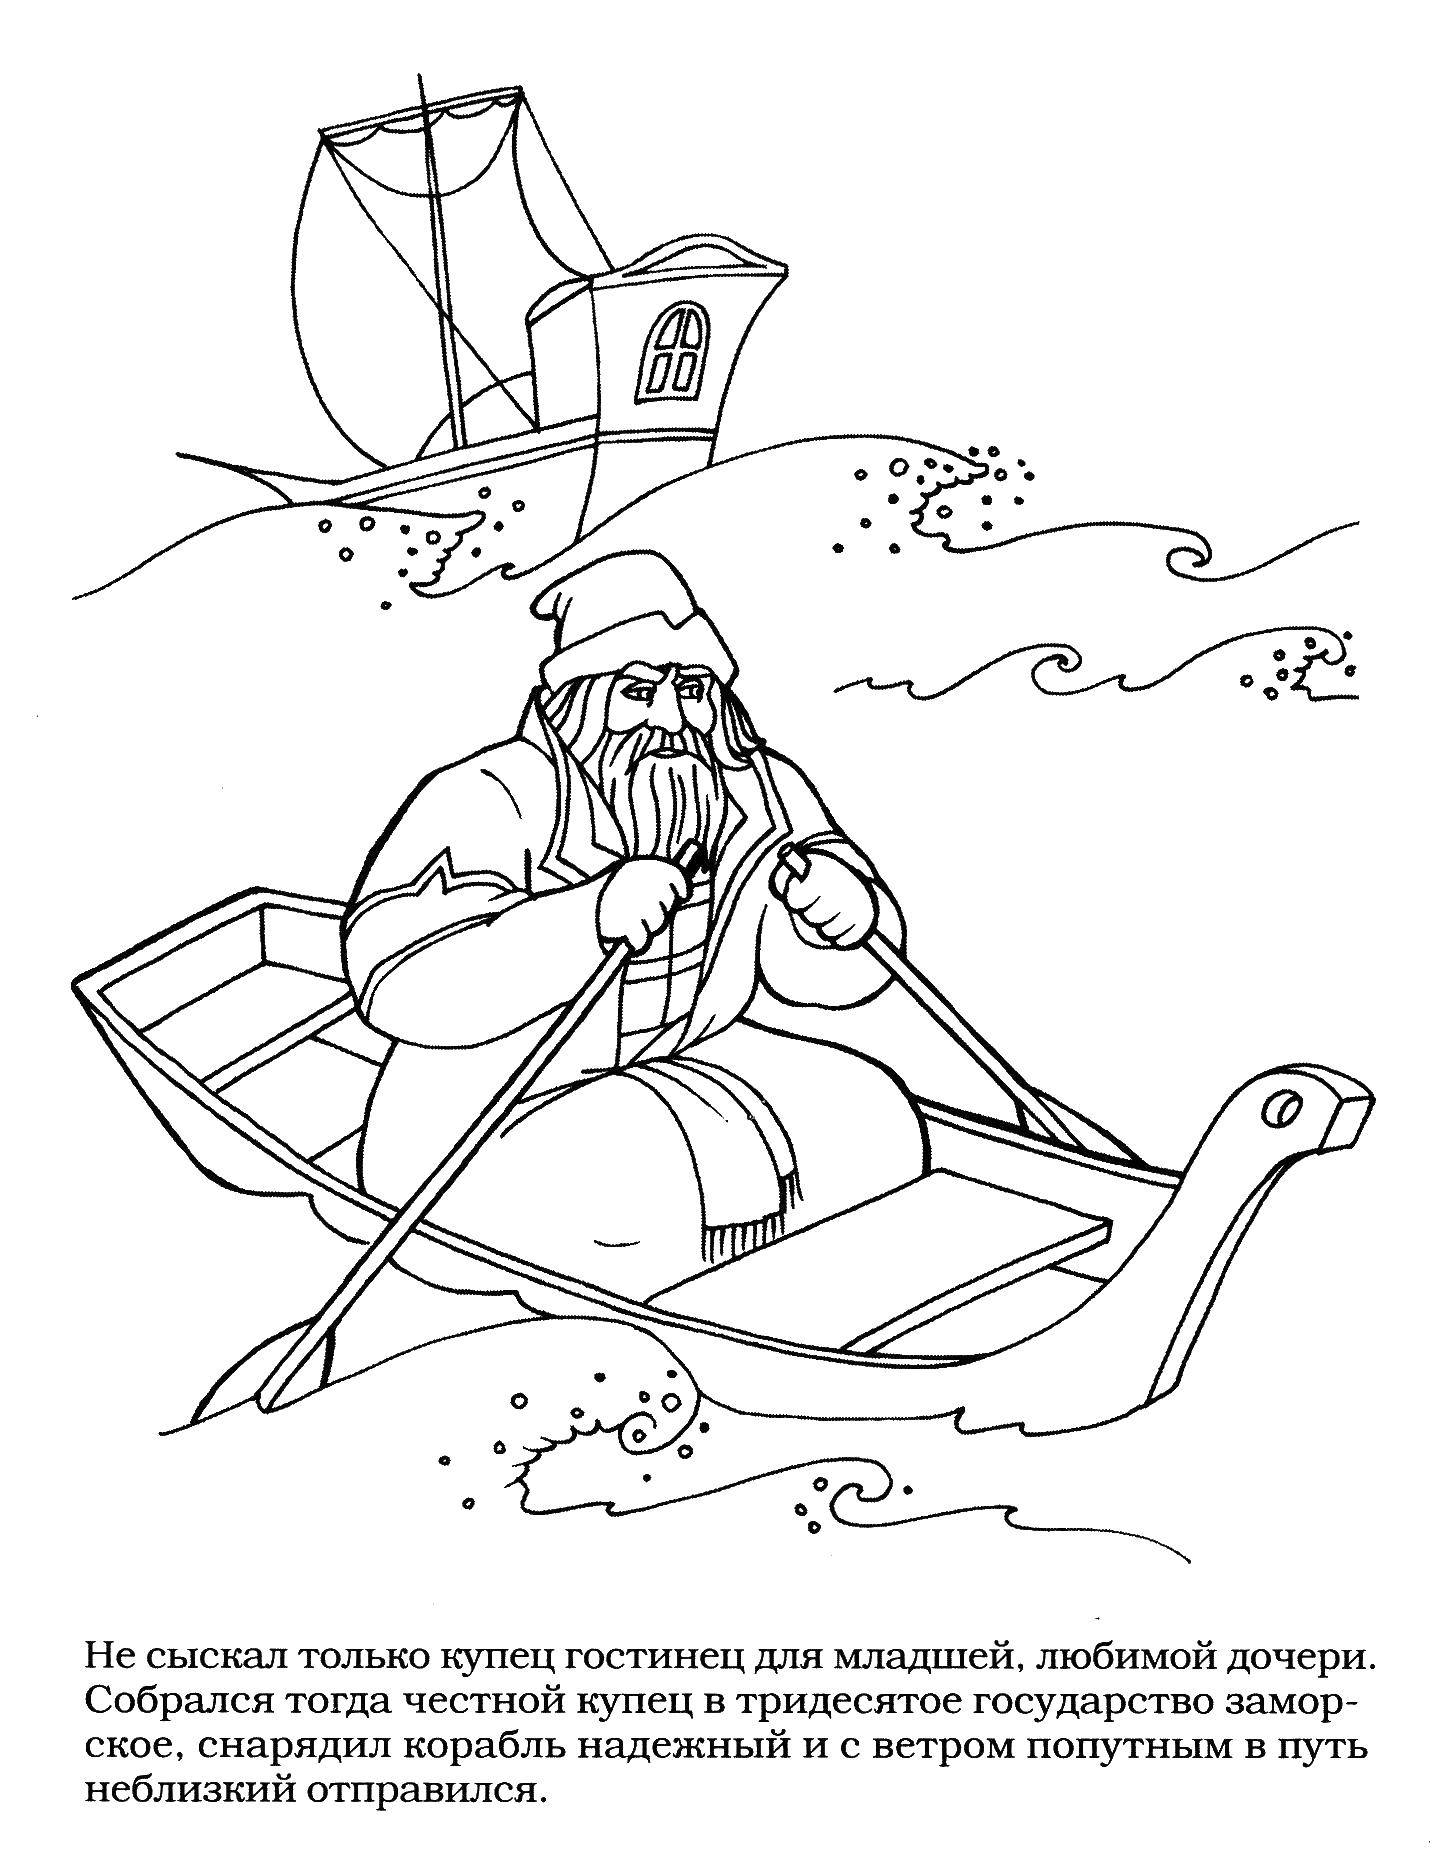 Название: Раскраска Купец на лодке. Категория: Сказки. Теги: сказки, море, купец, лодка.